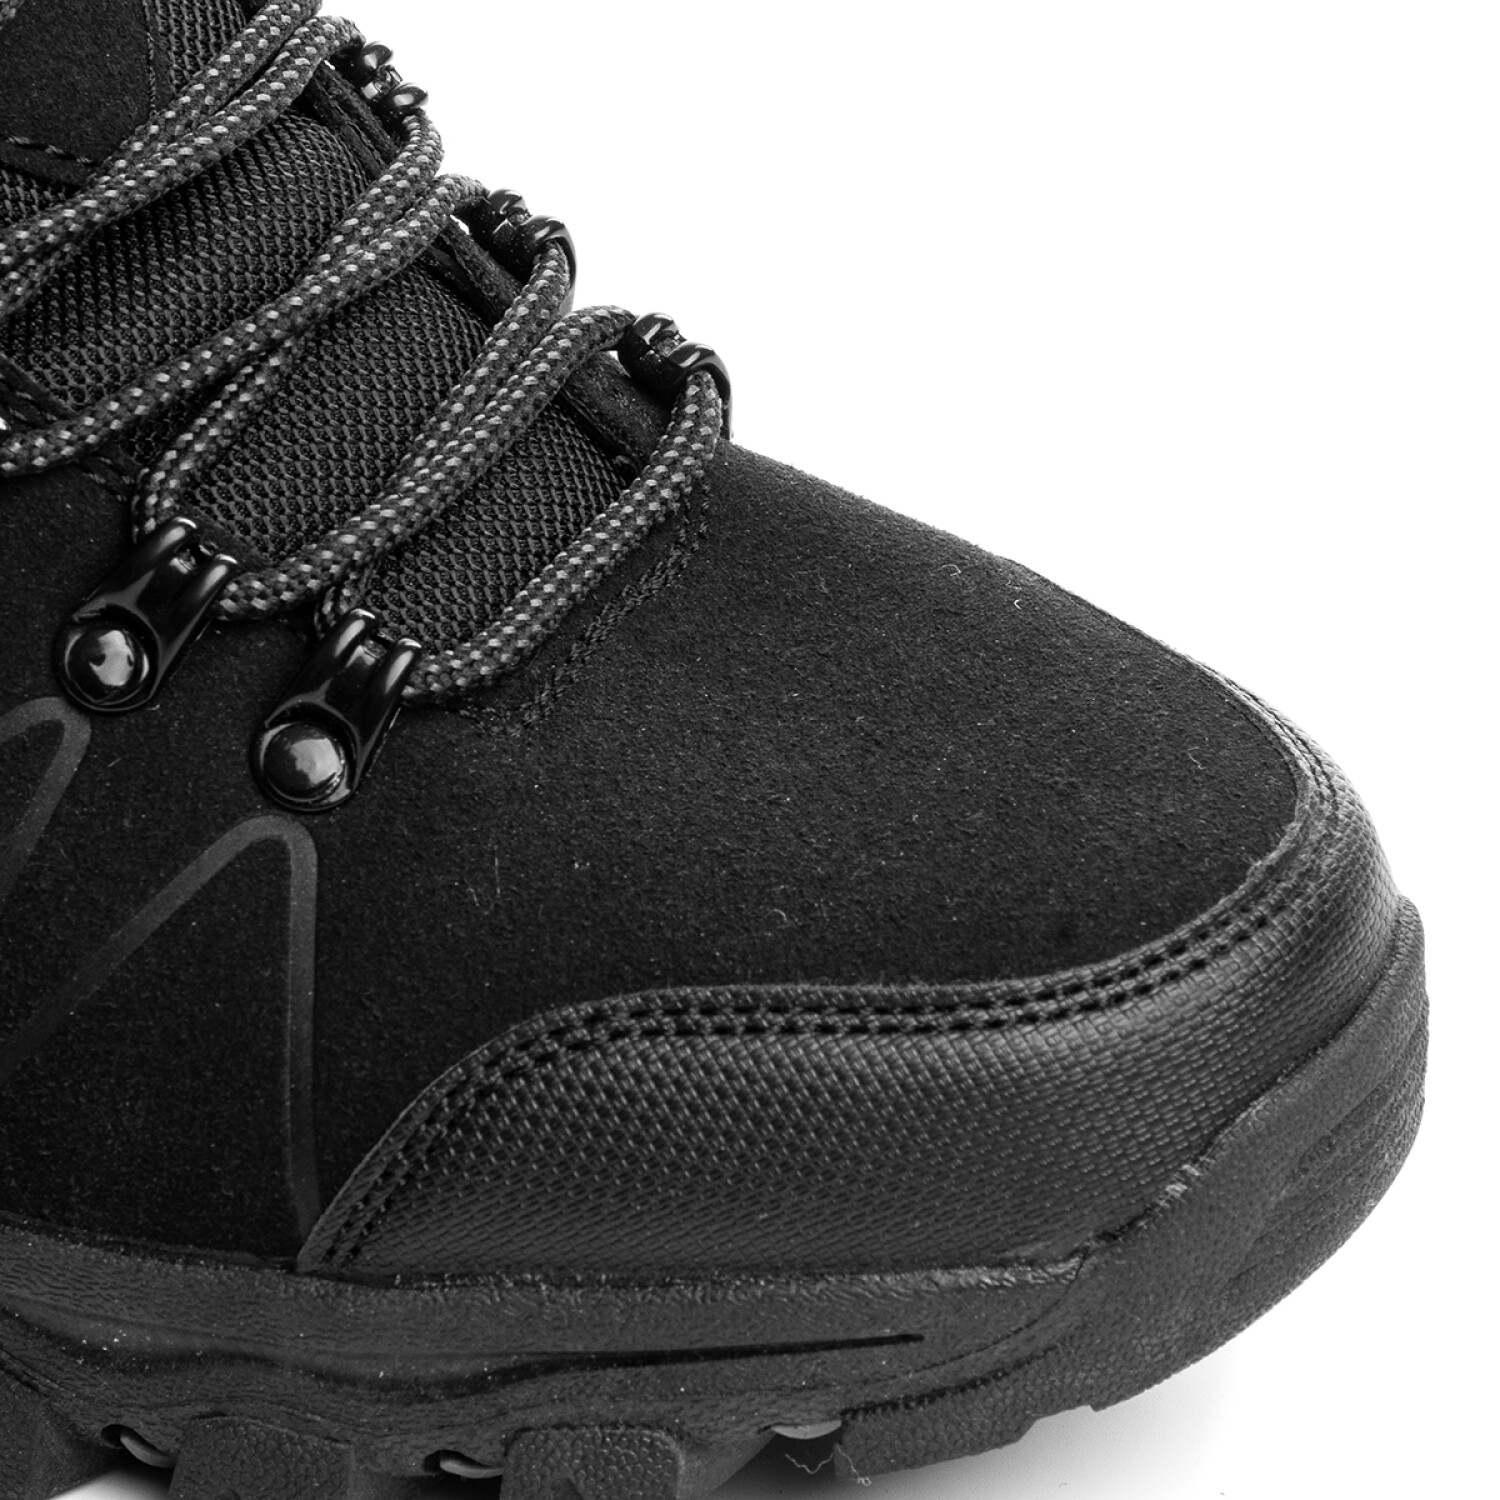 Calzado Botas Tácticas Outdoor Trekking Para Hombre - Negro — El